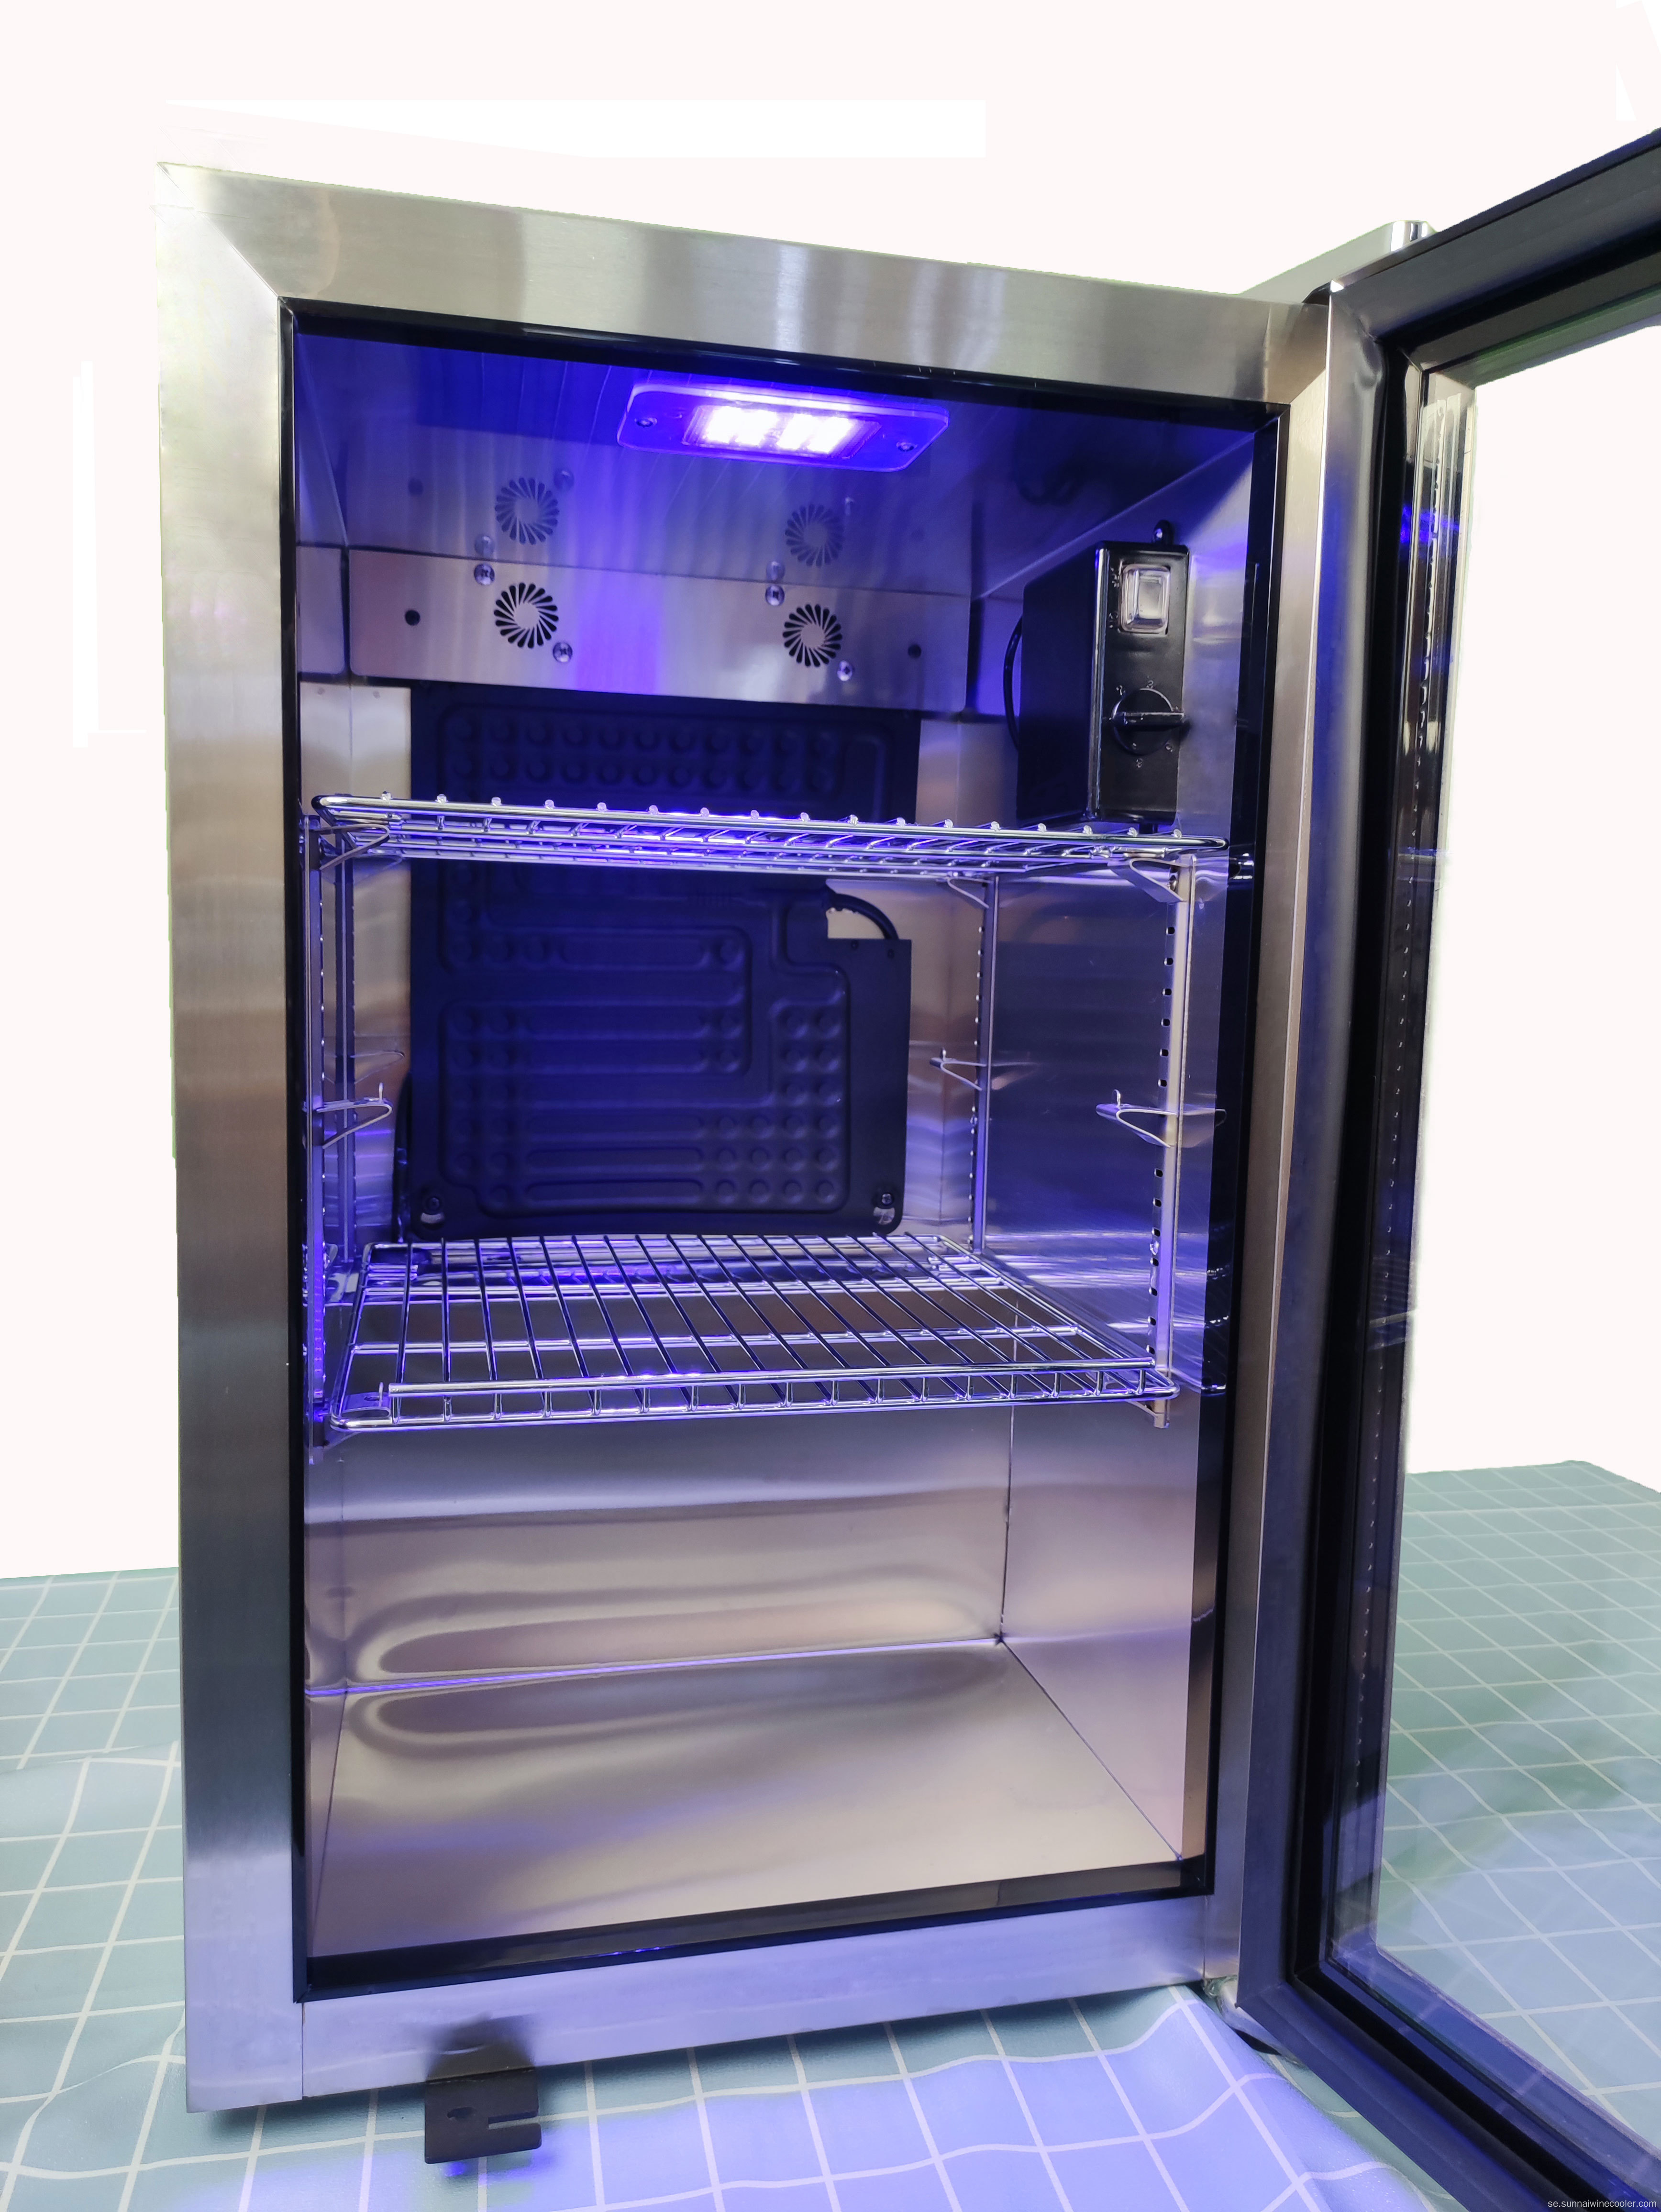 Kompressor Kompakt kylskåp för sodaöl